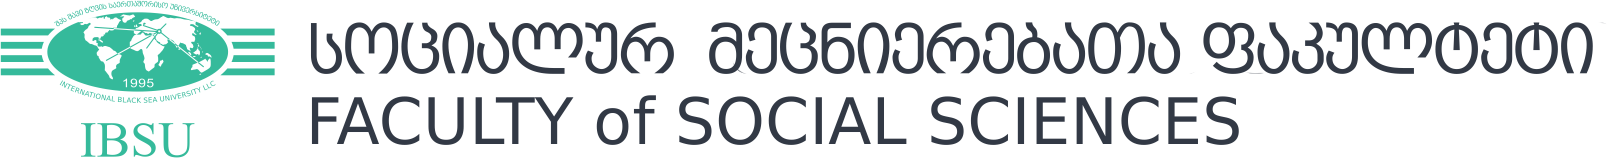 Faculty of Social Sciences Logo